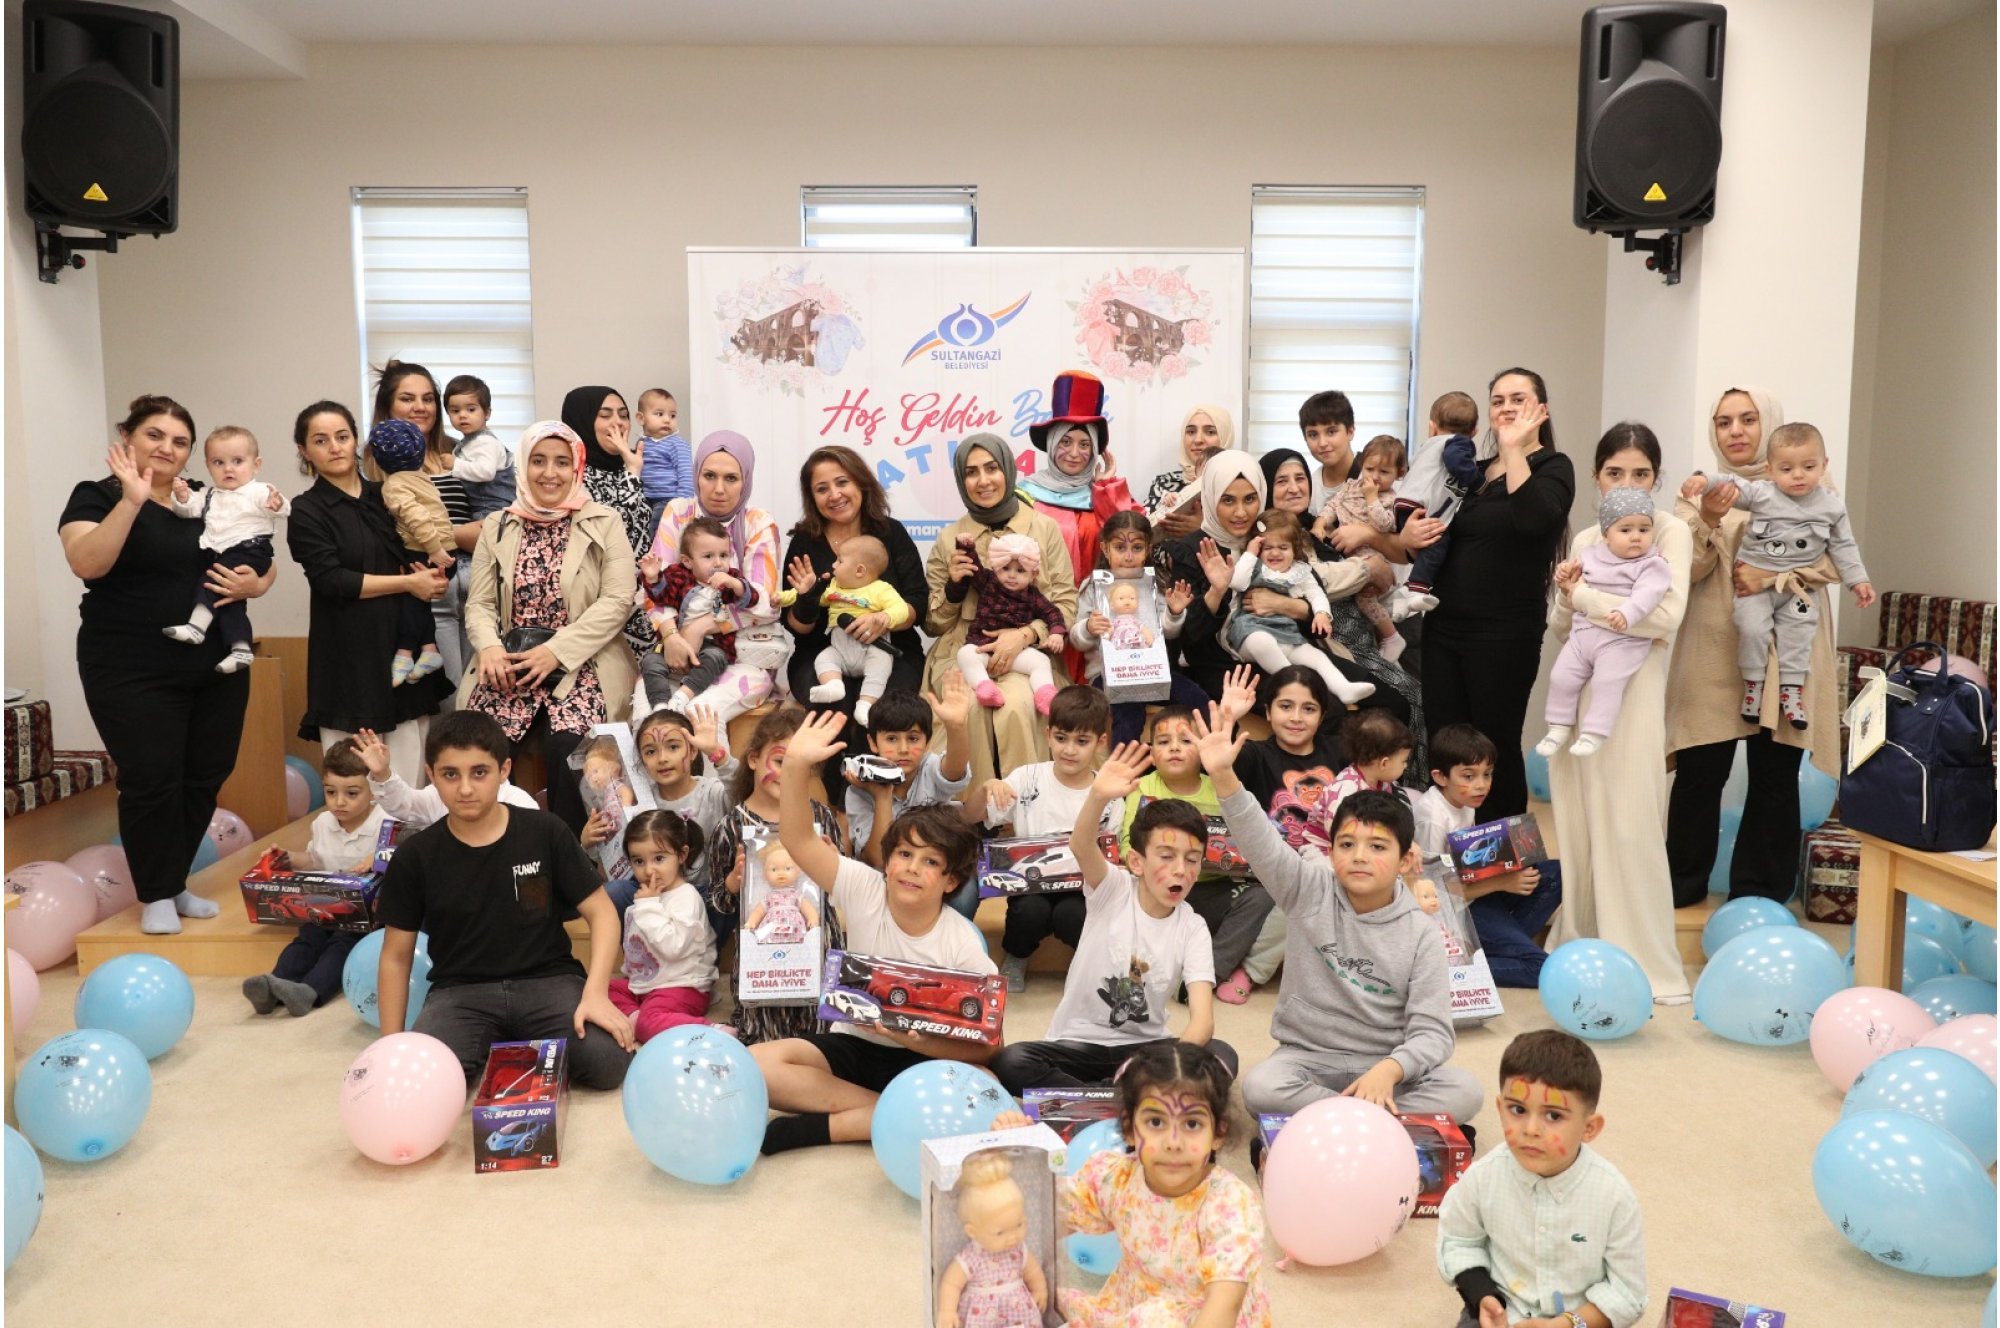 Sultangazi Belediyesi, yeni bebek heyecanı yaşayan ailelerin mutluluğuna ortak oluyor